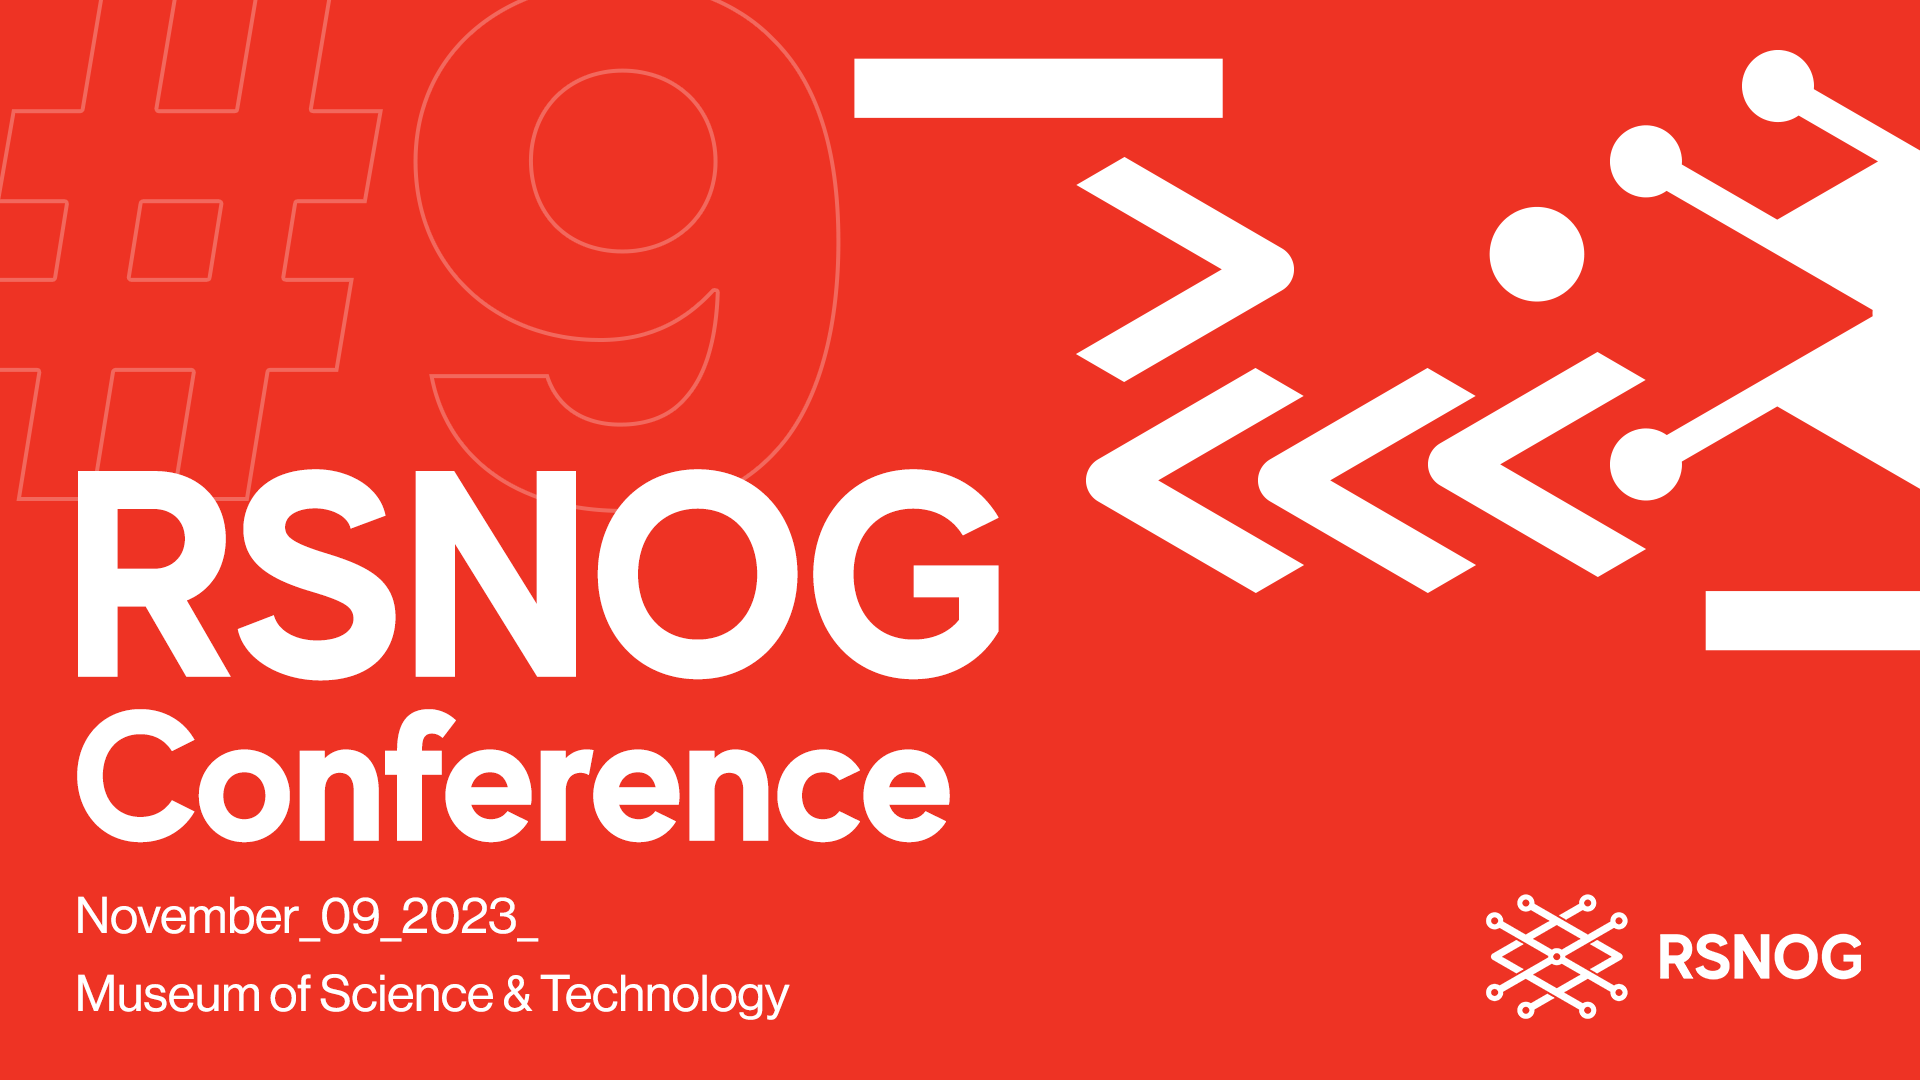 The Ninth RSNOG Conference Held